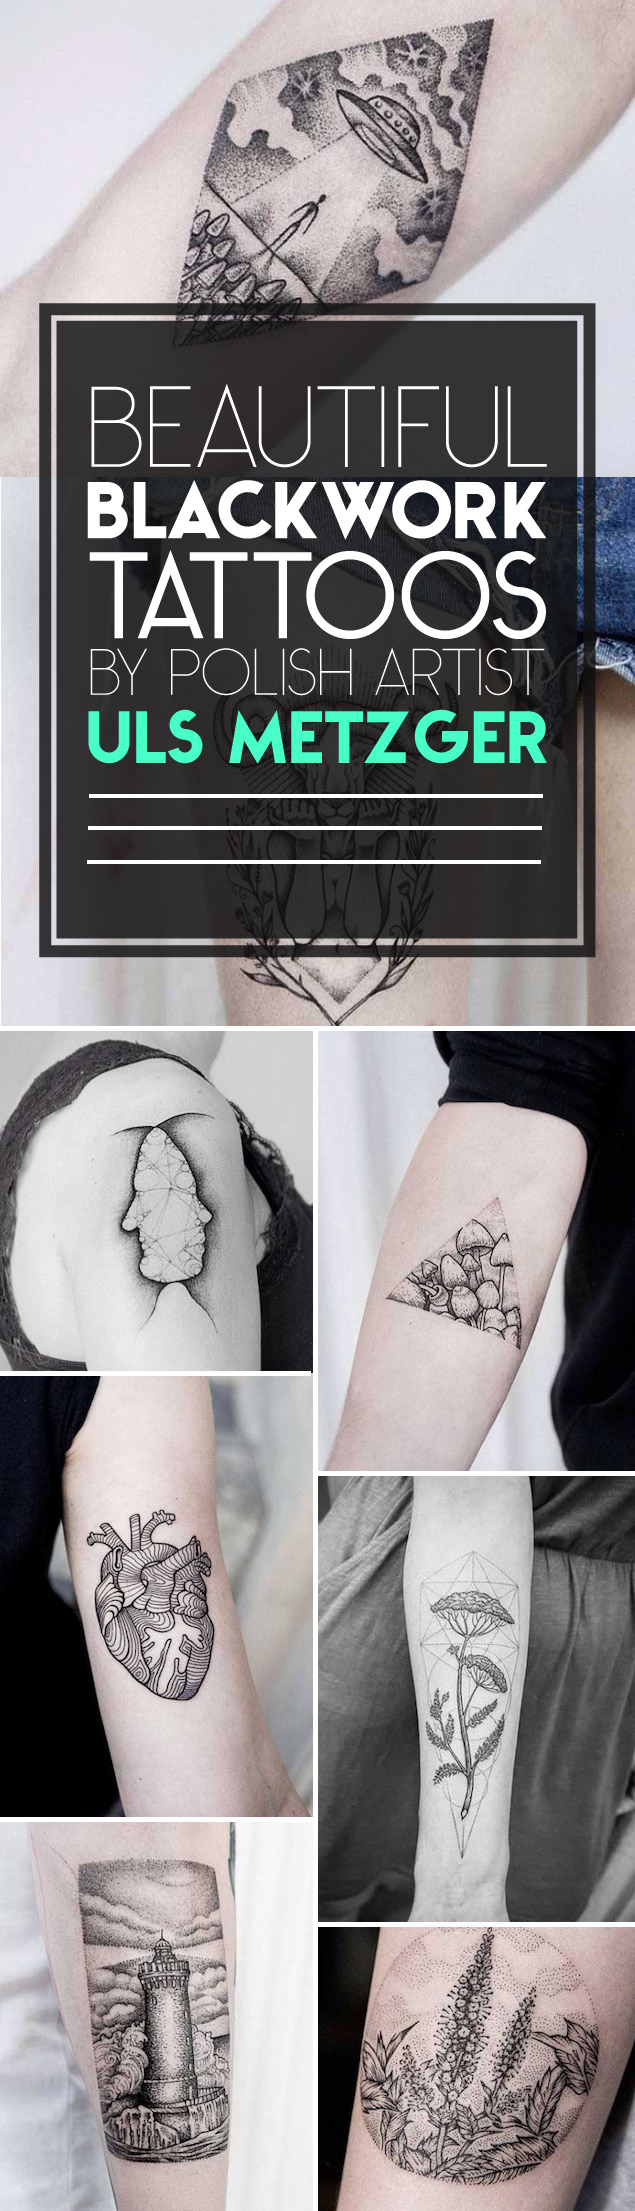 Blackwork Tattoos by Uls Metzger